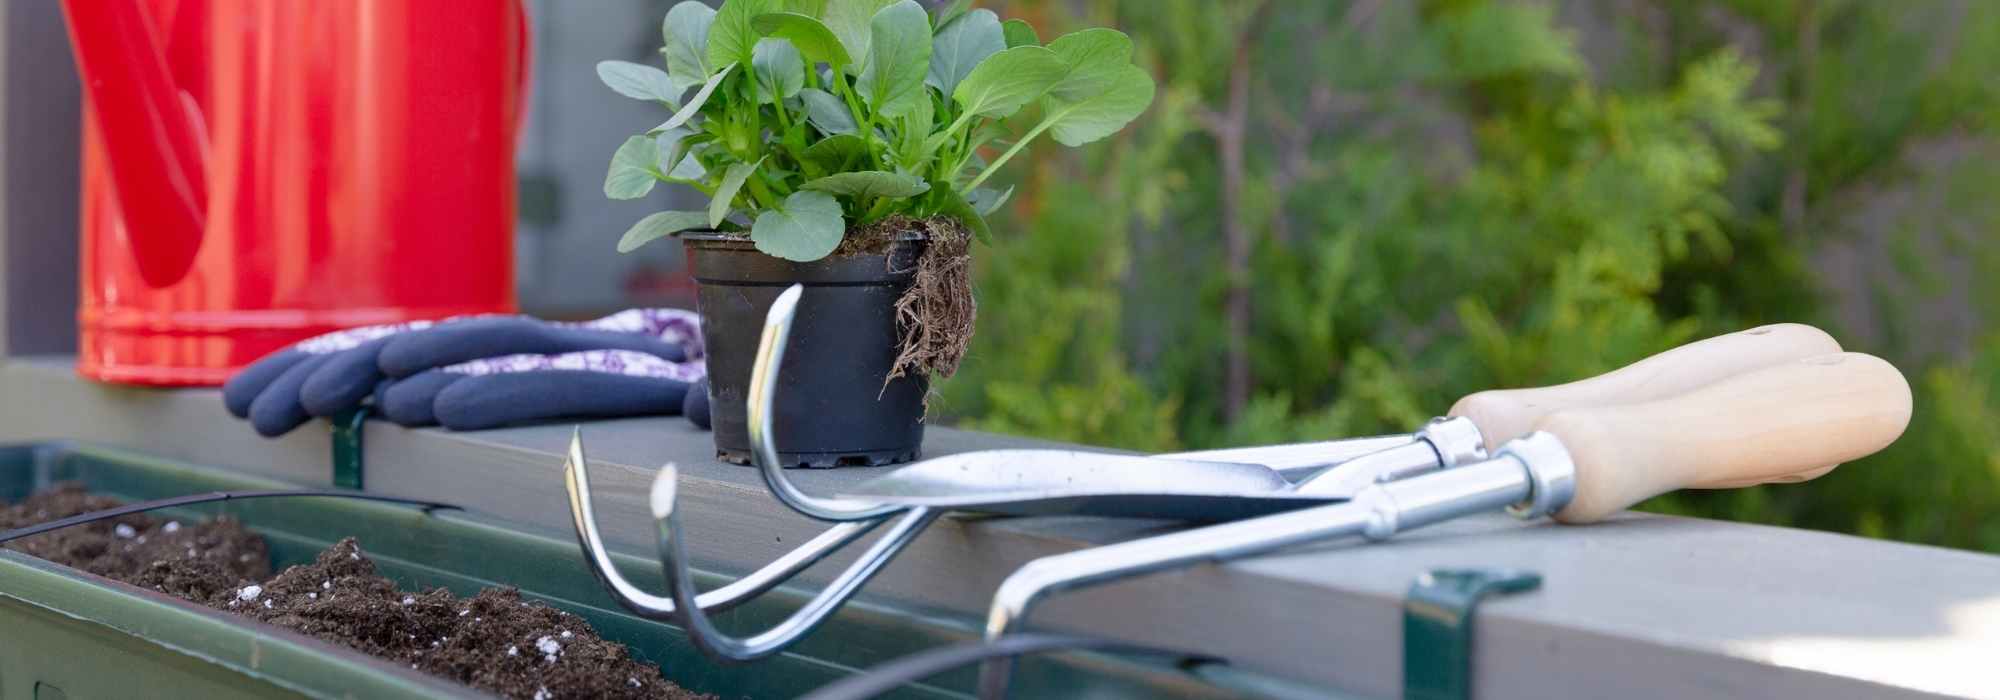 Le matériel indispensable pour jardiner sur son balcon